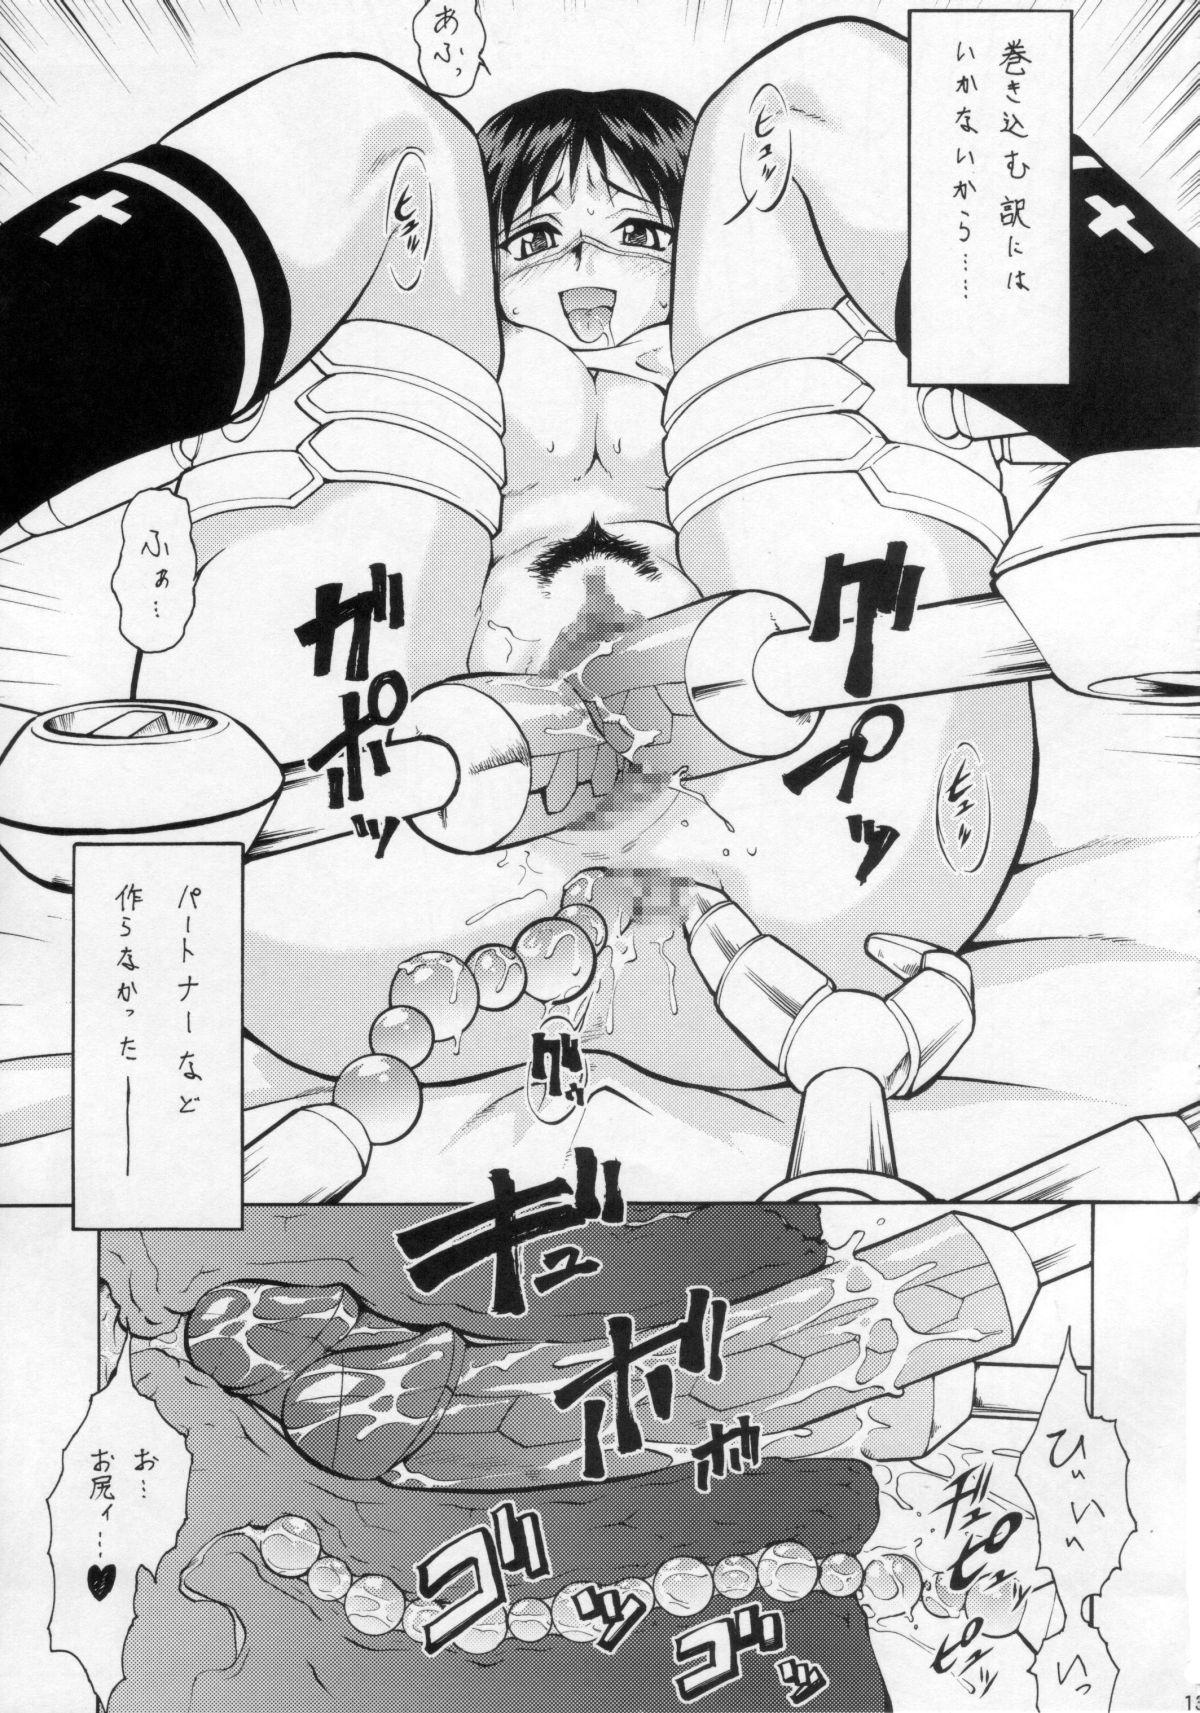 Umeta Manga Shuu 11 -nin iru! 11